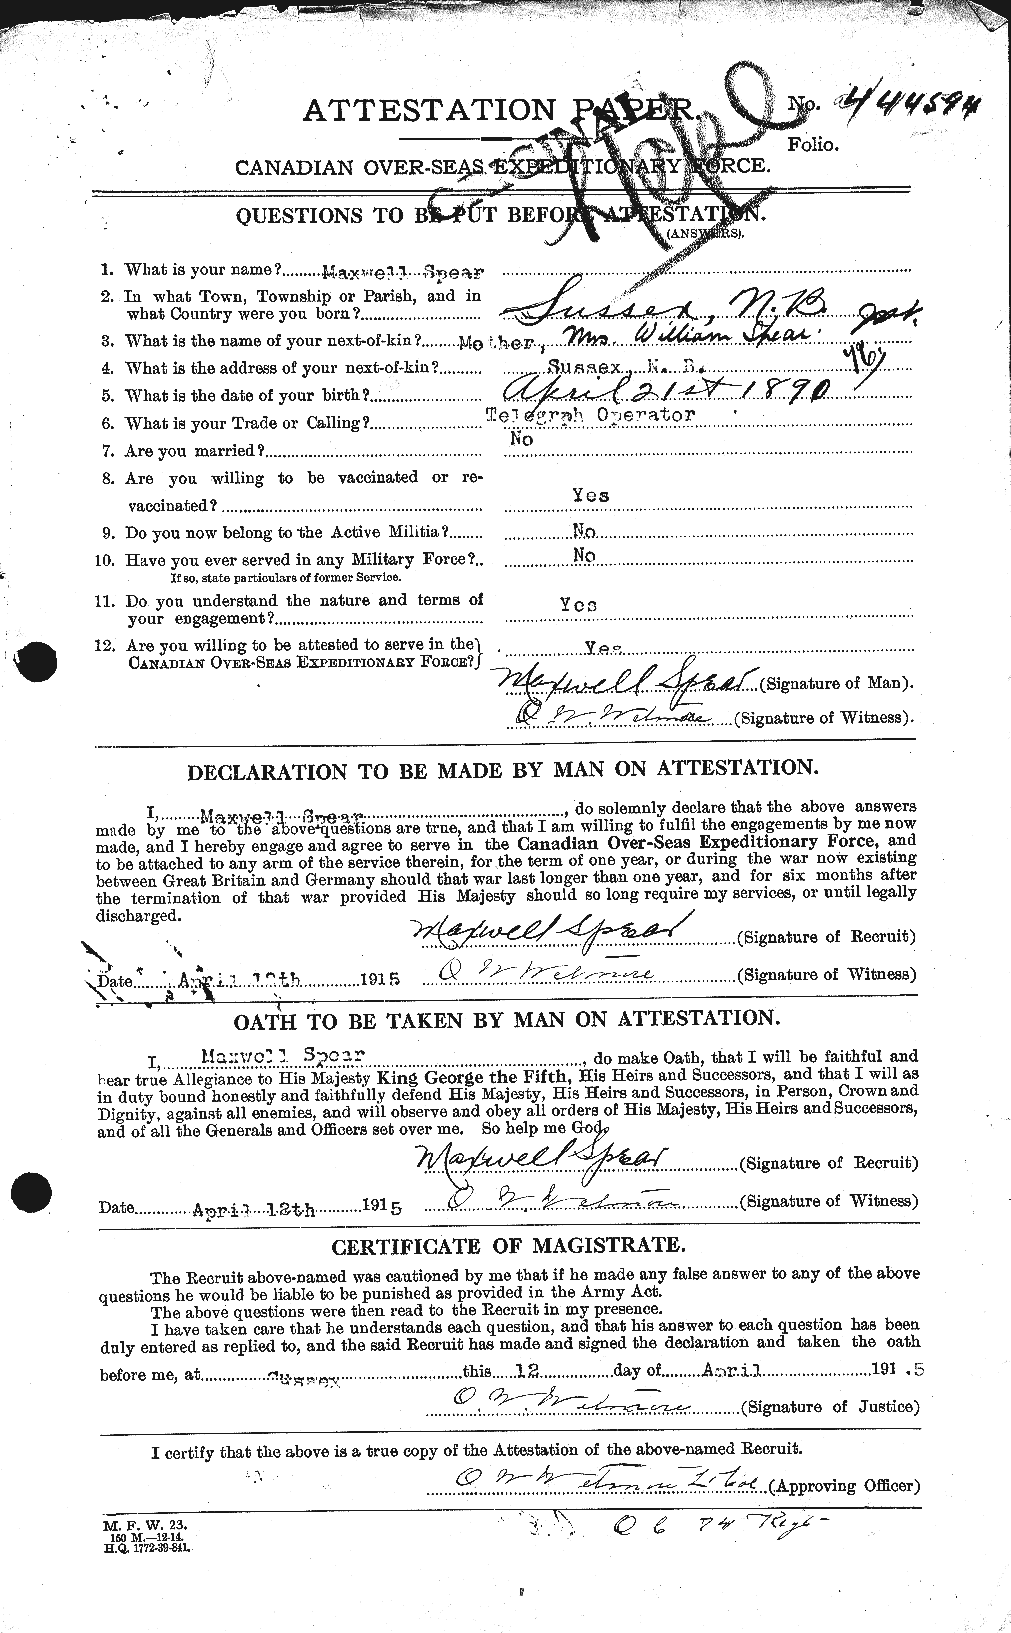 Dossiers du Personnel de la Première Guerre mondiale - CEC 110830a